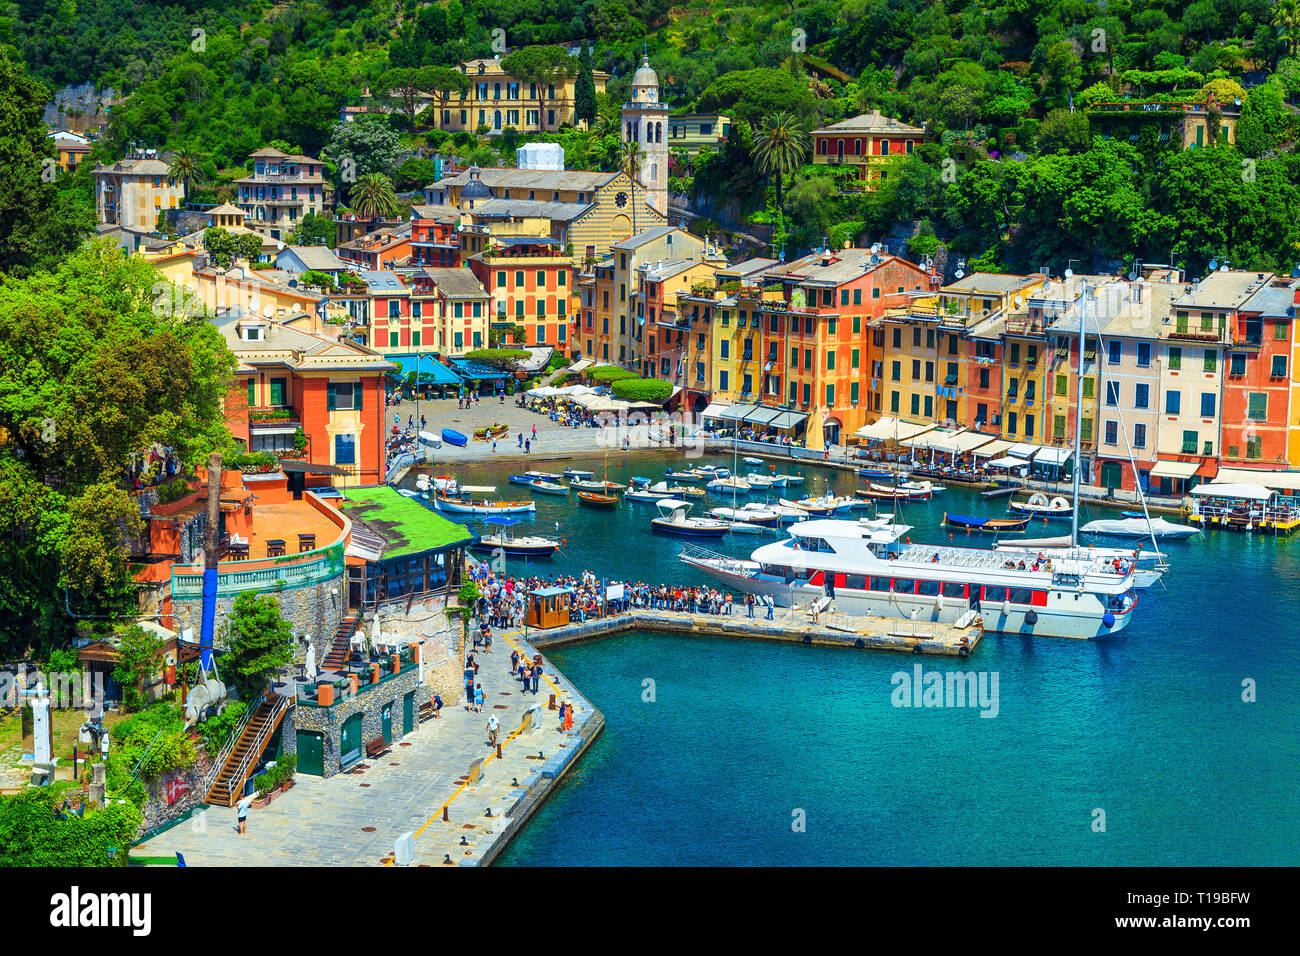 Viaje impresionante ubicación, Portofino, antiguo pueblo de pescadores, impresionantes coloridos edificios mediterráneo y puerto de lujo con turistas, Liguria, Italia Foto de stock